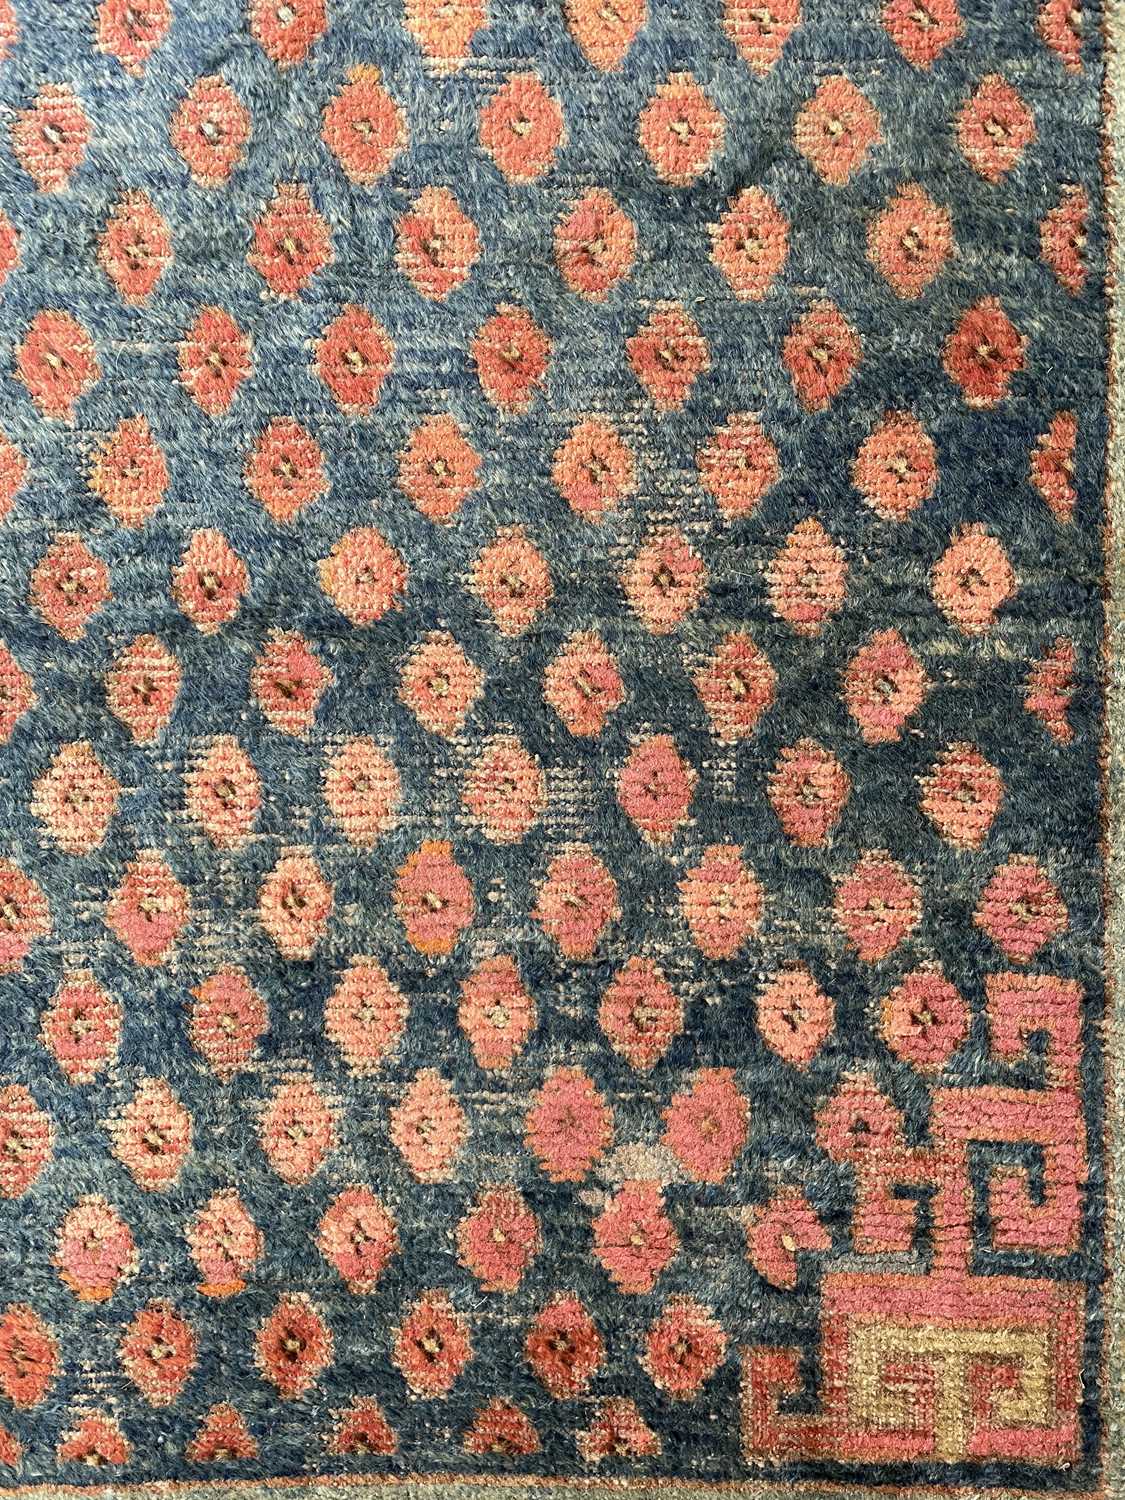 A Khotan long rug - Image 16 of 37